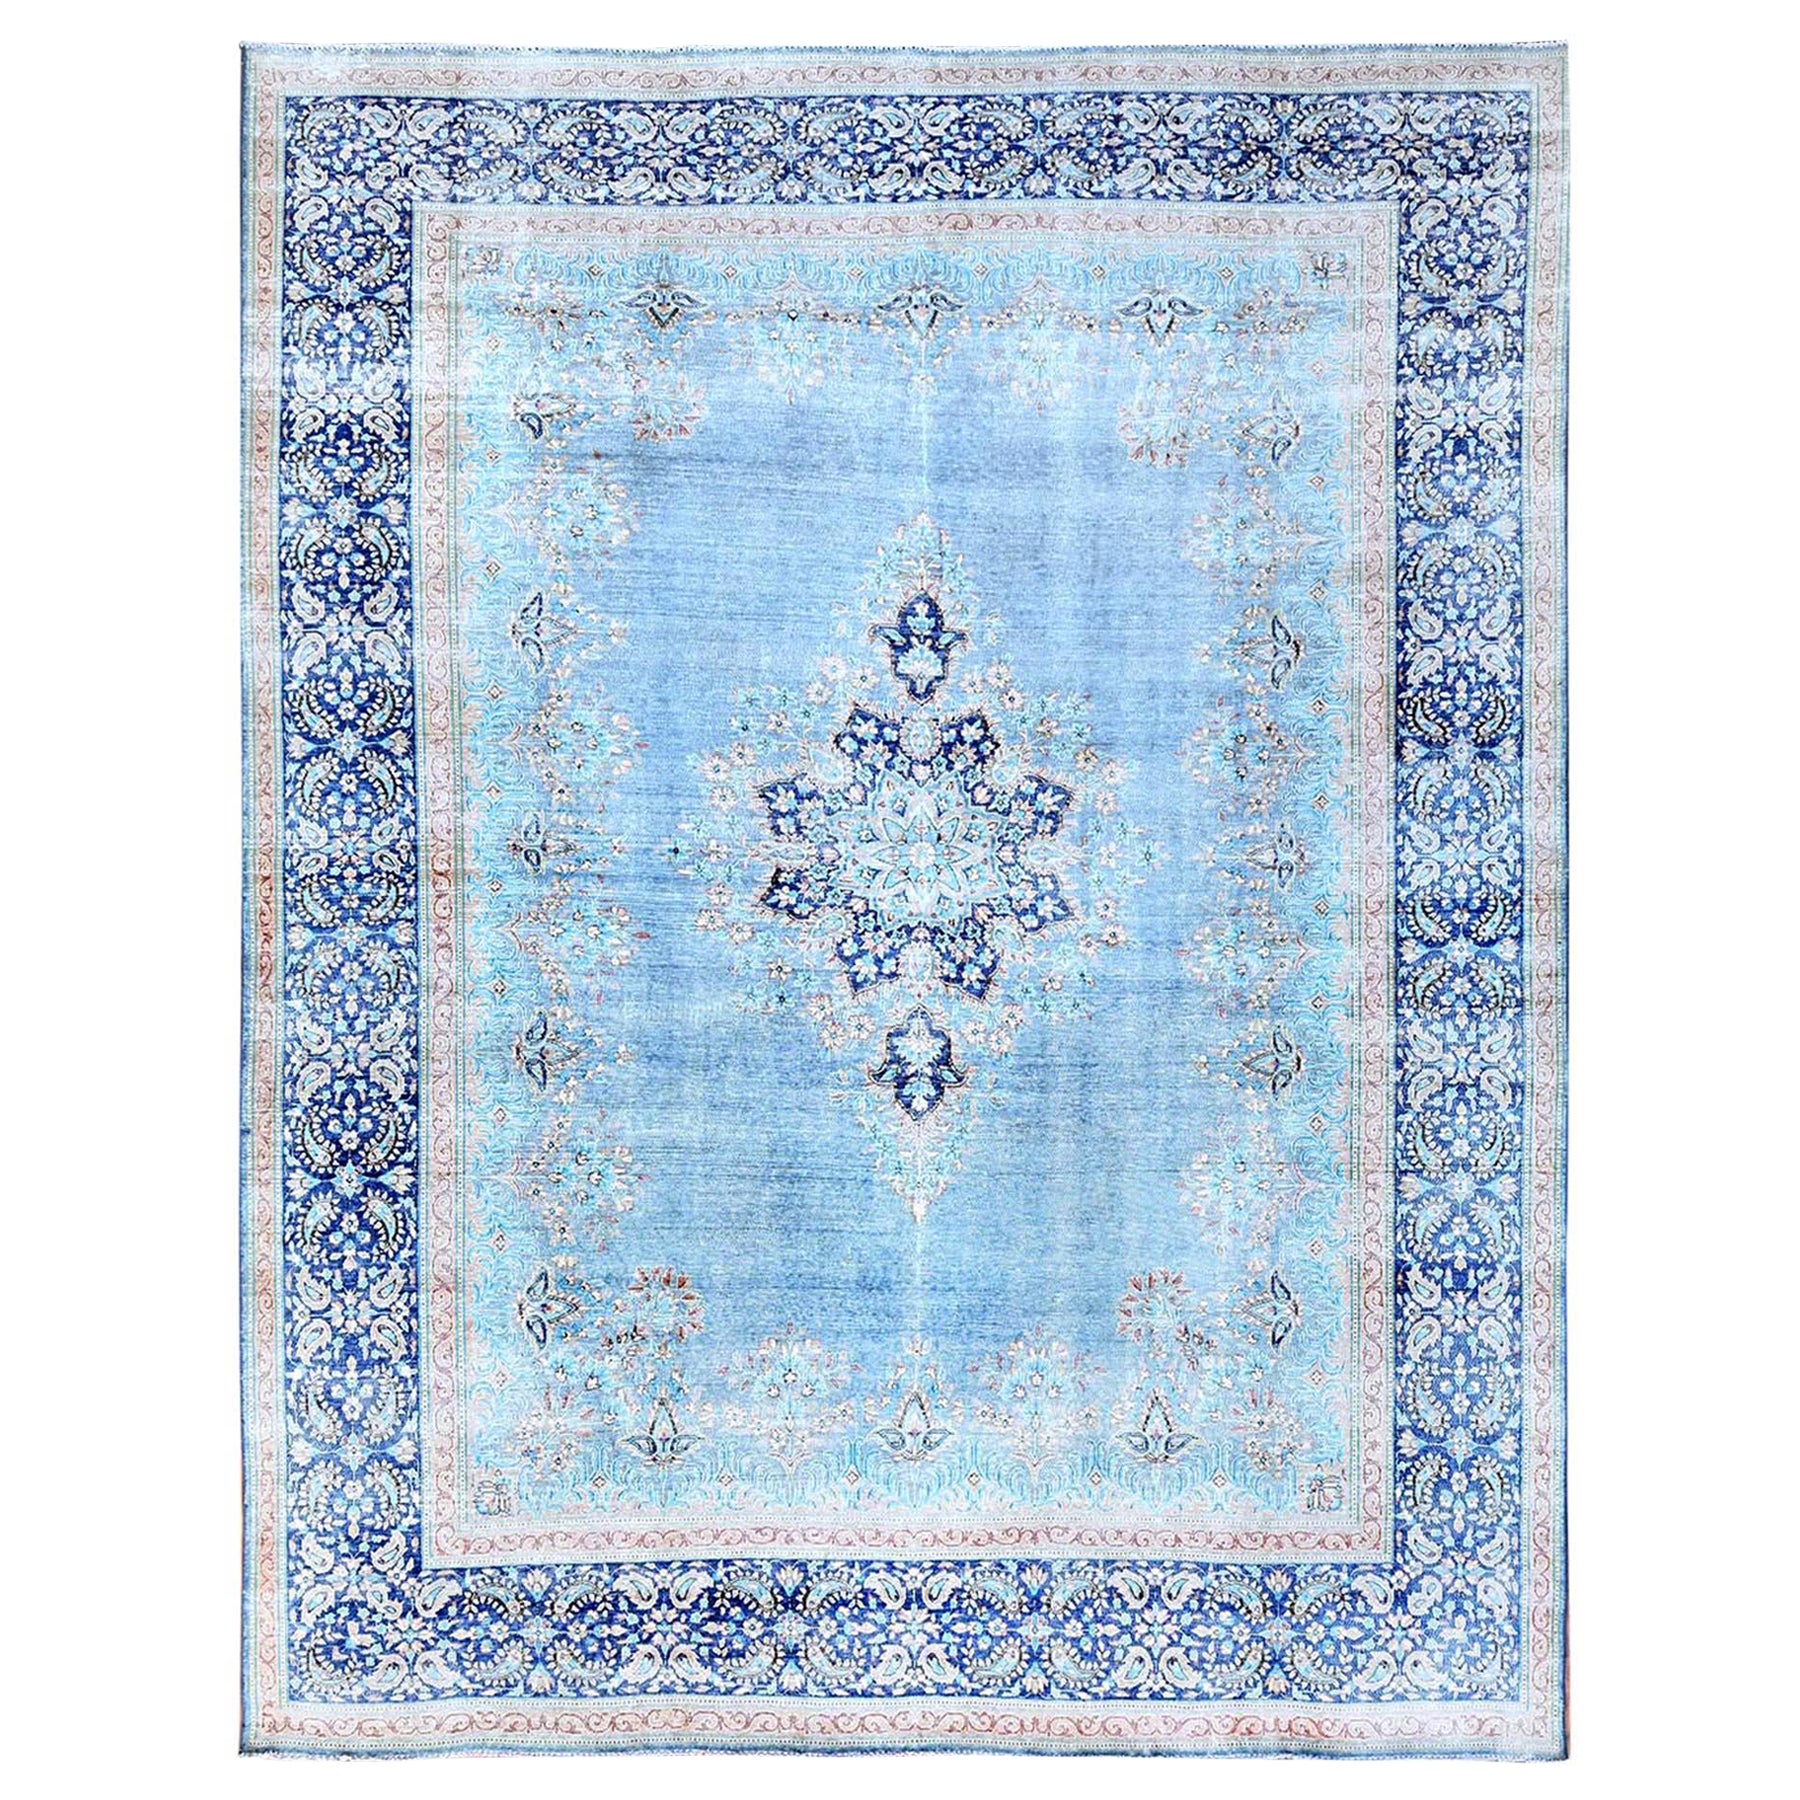 Blue Hand Knotsted Wool Clean Vintage Persian Kerman Sheared Low Rustic Feel Rug (Tapis bleu noué à la main, propre et rustique)